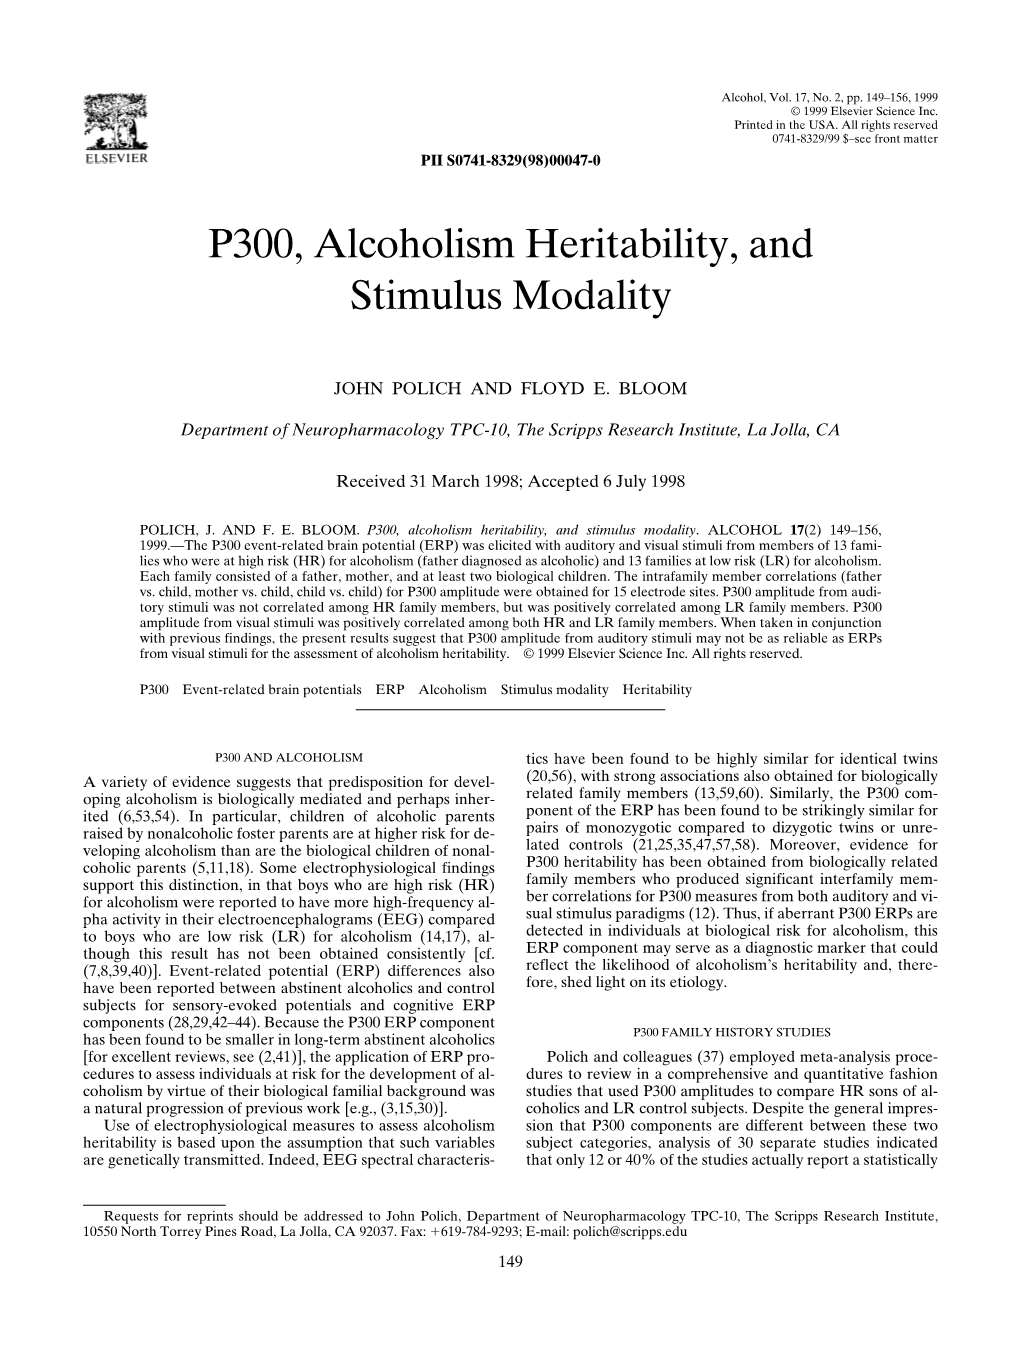 P300, Alcoholism Heritability, and Stimulus Modality